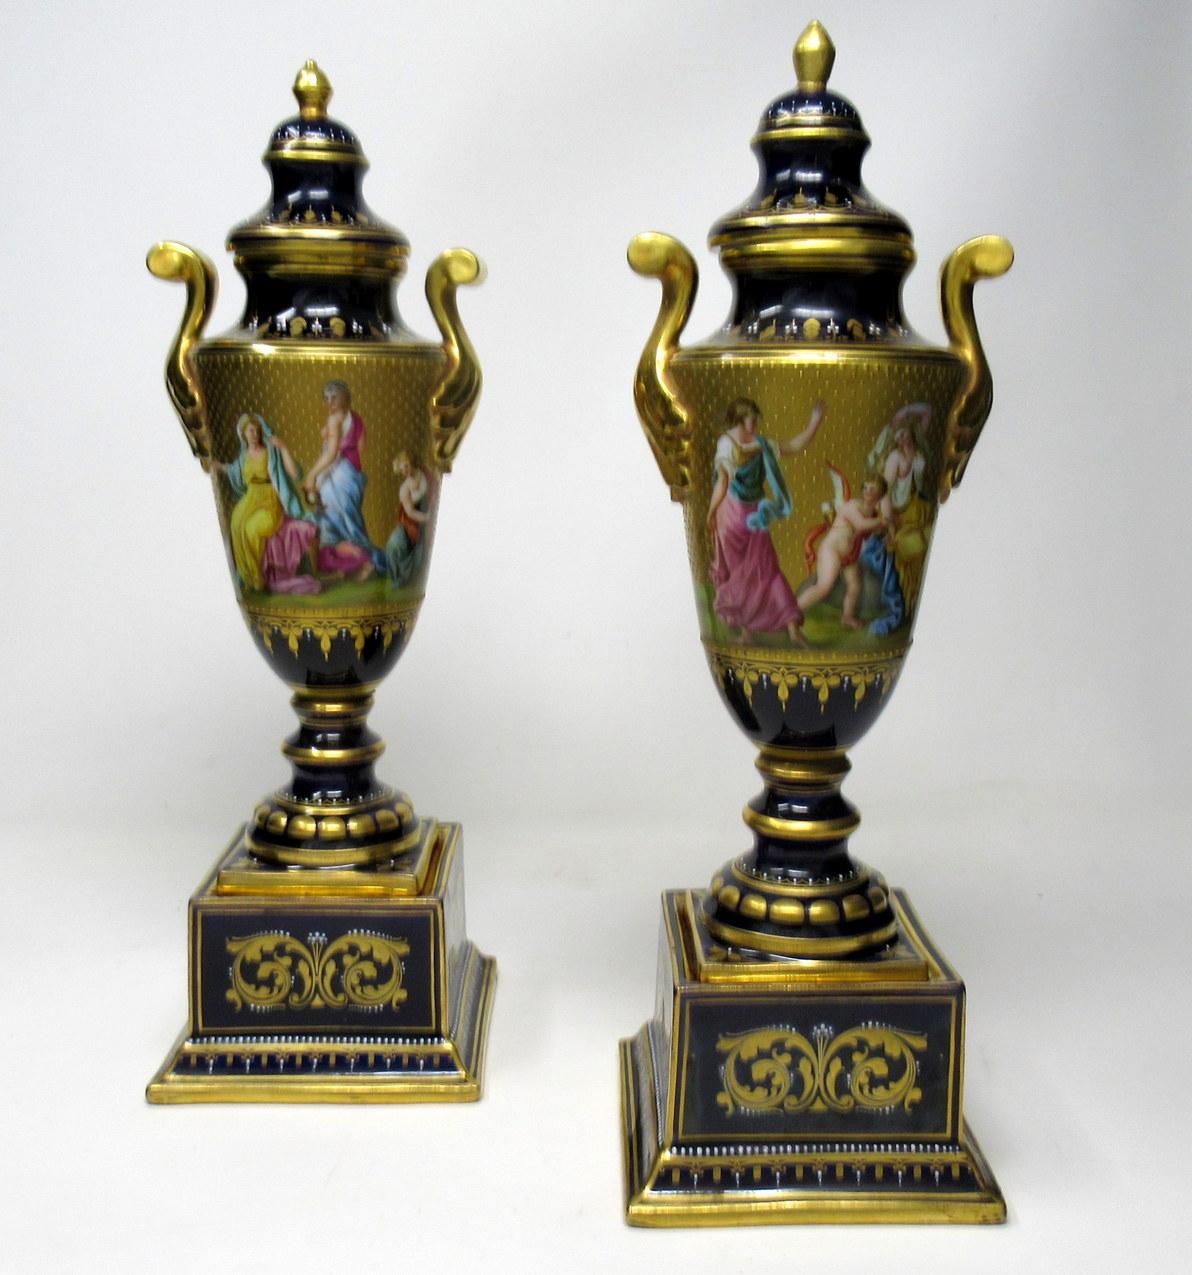 Paire d'urnes royales autrichiennes d'une qualité exceptionnelle, datant de la dernière moitié du XIXe siècle.

La frise tout autour est superbement peinte à la main avec des décorations très détaillées sur fond doré représentant des scènes